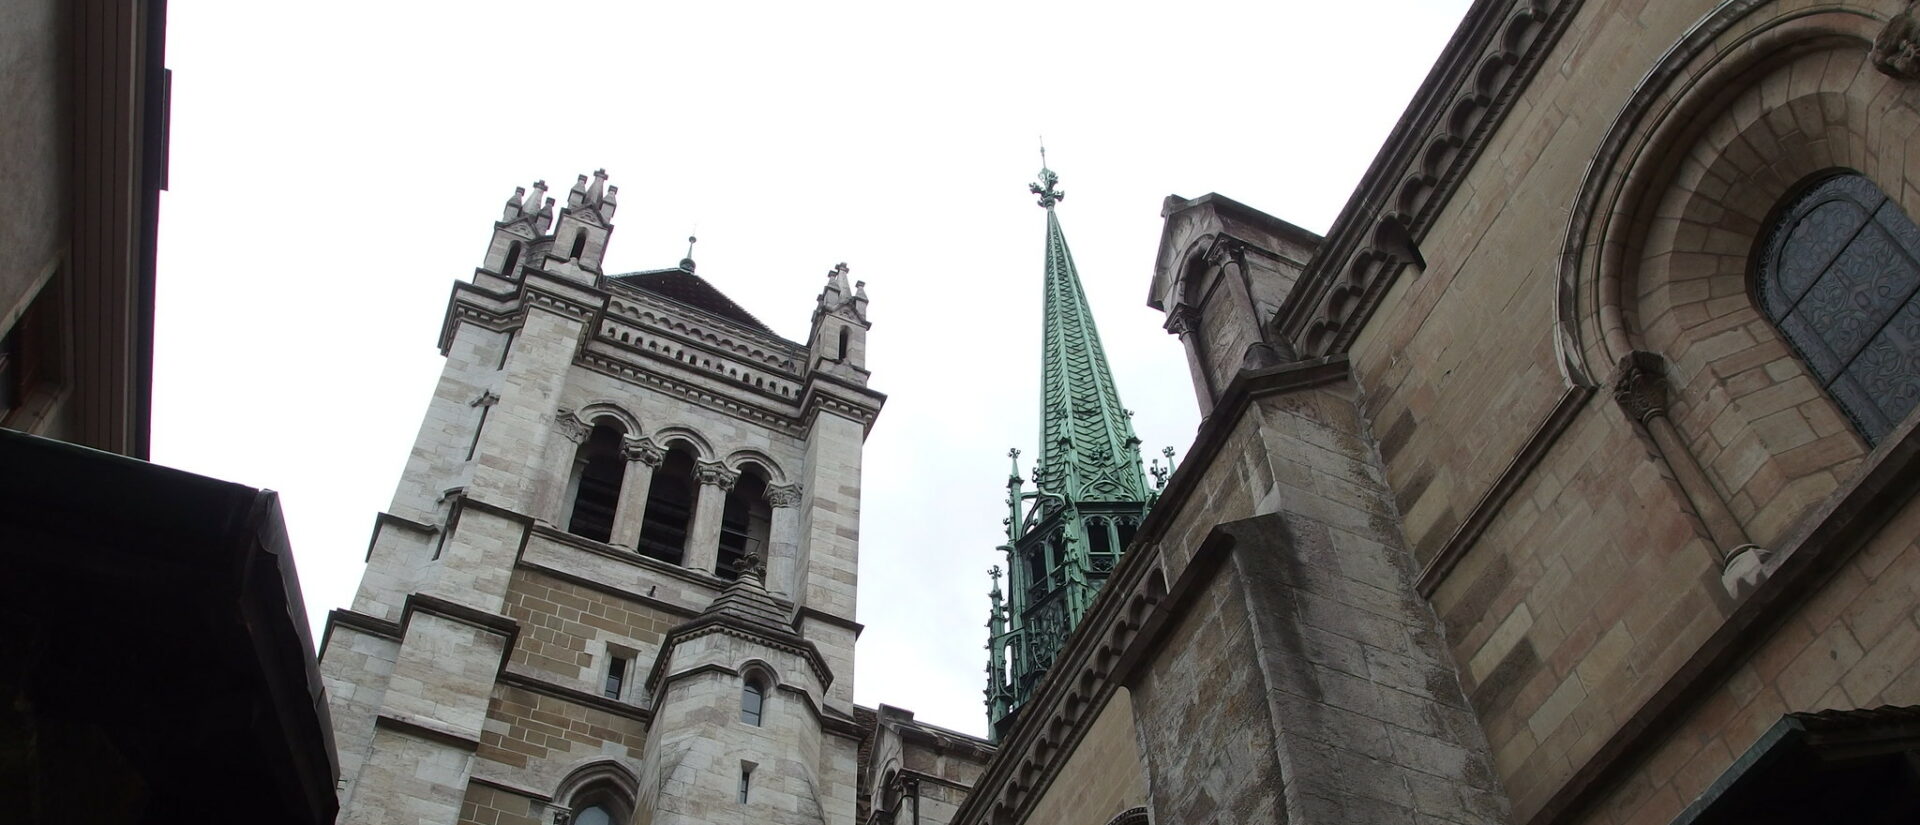 La cathédrale Saint-Pierre de Genève a une longue et riche histoire | © Guilhem Vellut/Flickr/CC BY 2.0